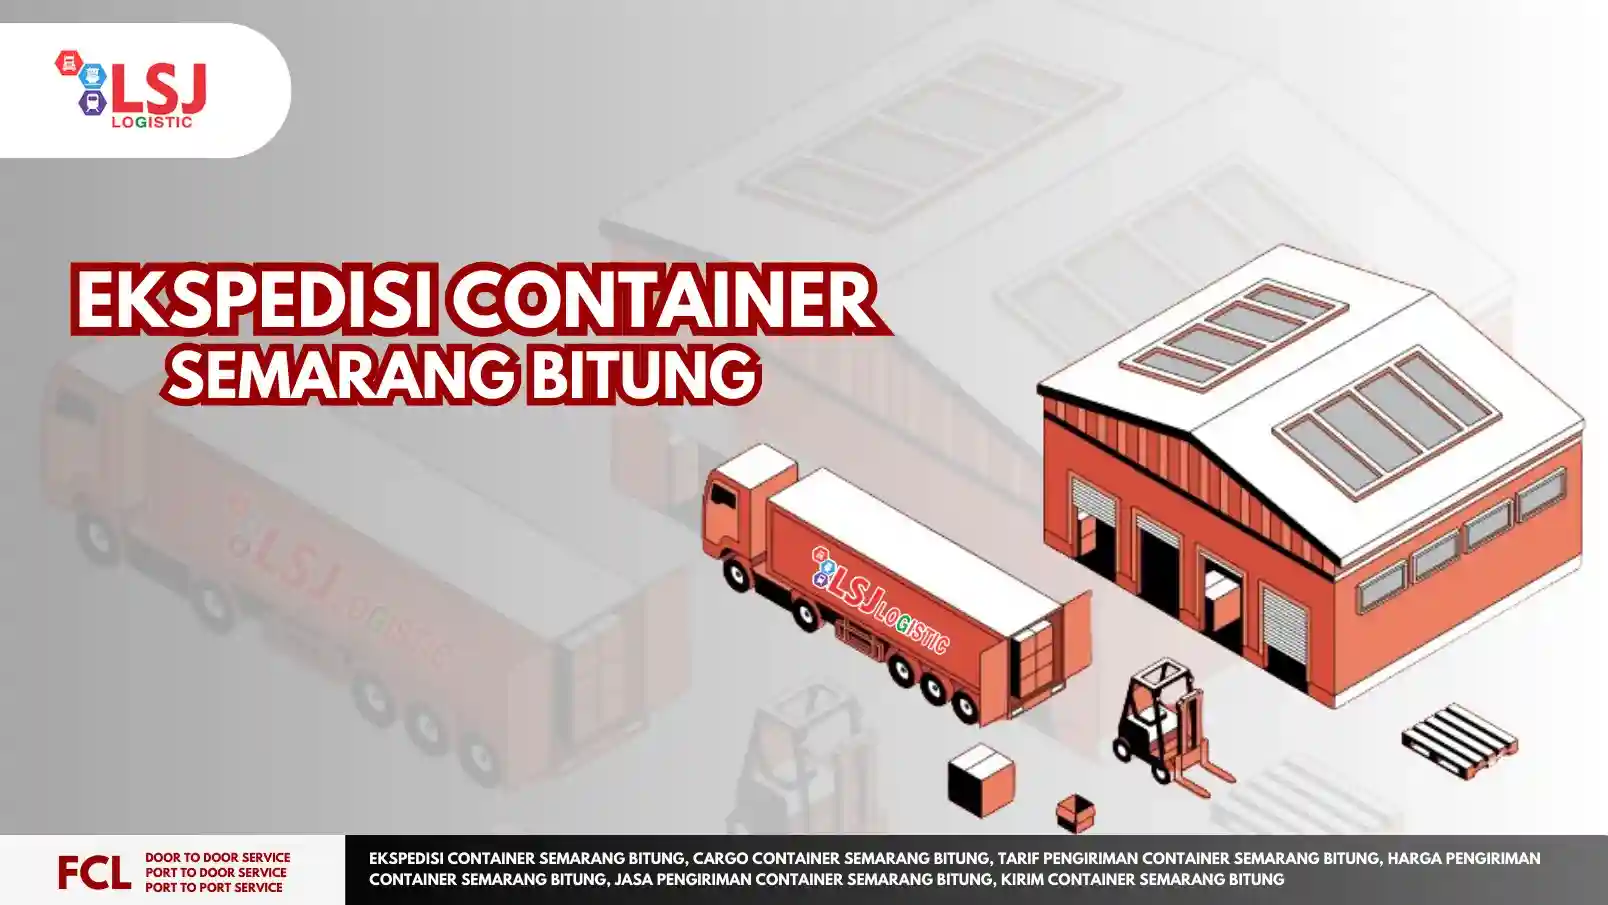 Ekspedisi Container Semarang Bitung